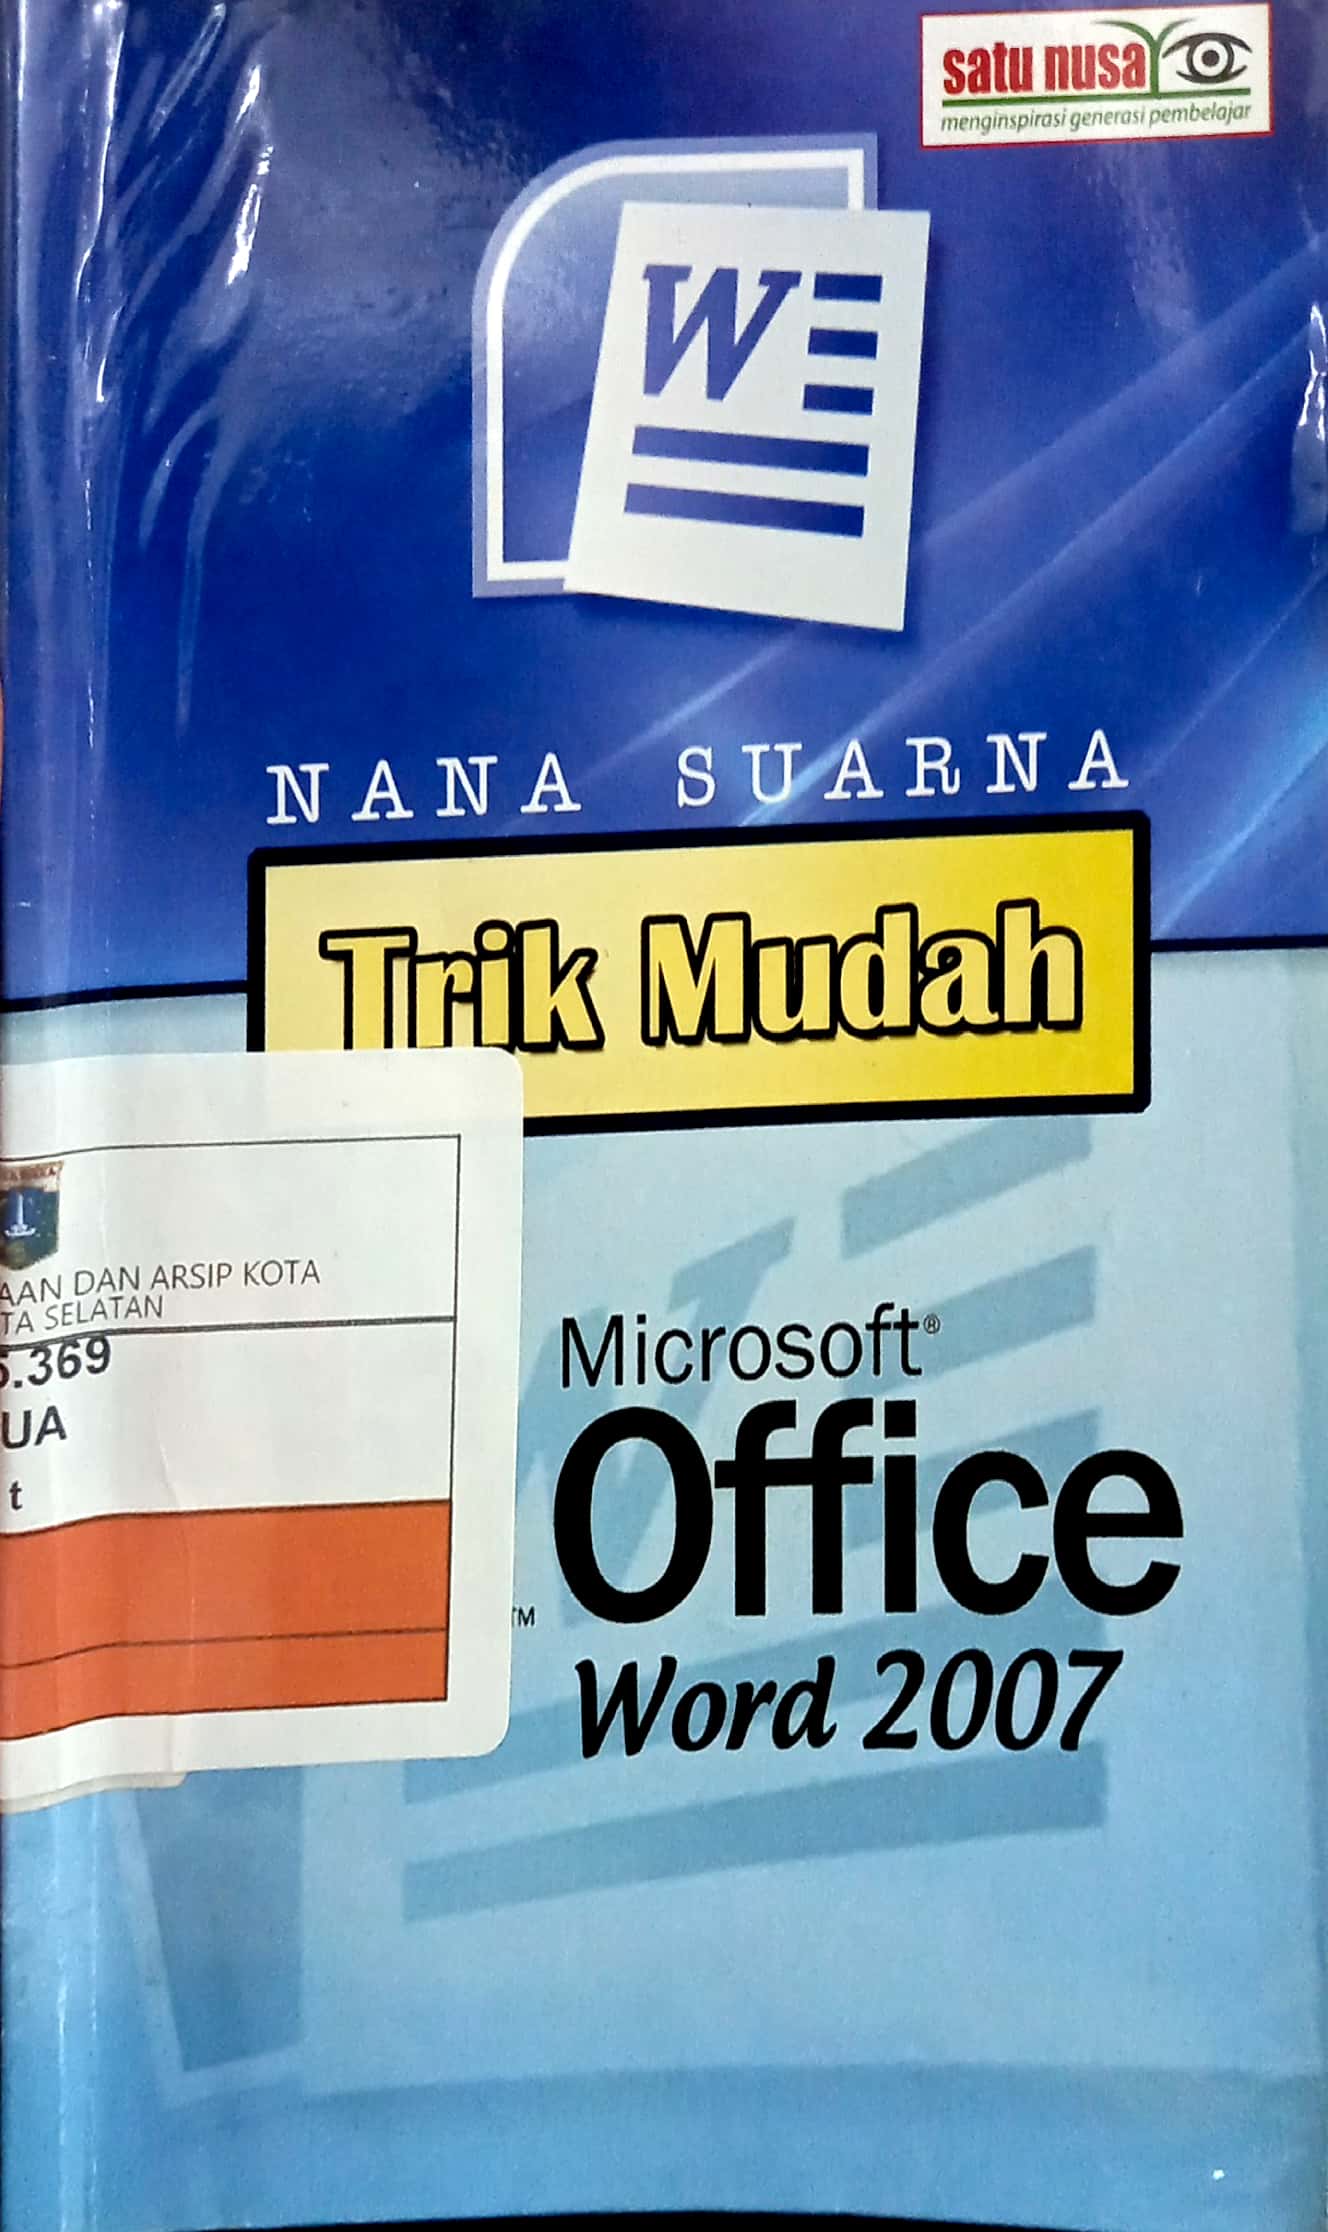 Trik mudah microsoft office word 2007